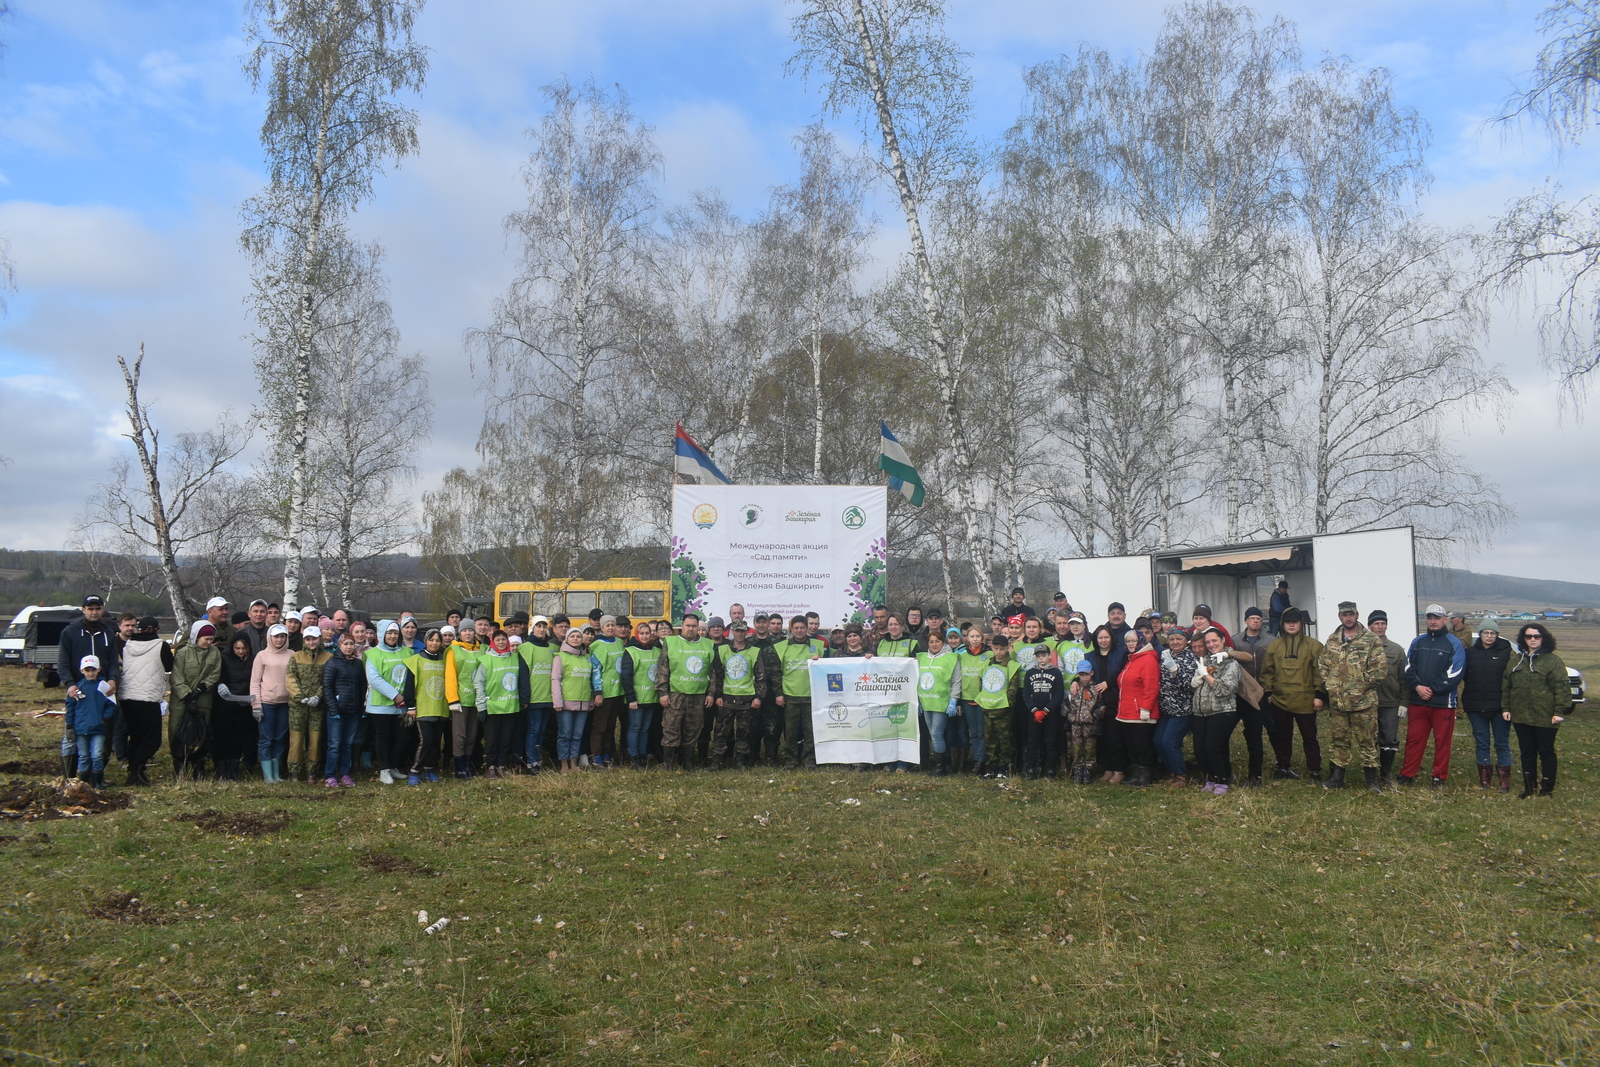 Дуванский район присоединился к экологической акции "Зеленая Башкирия"